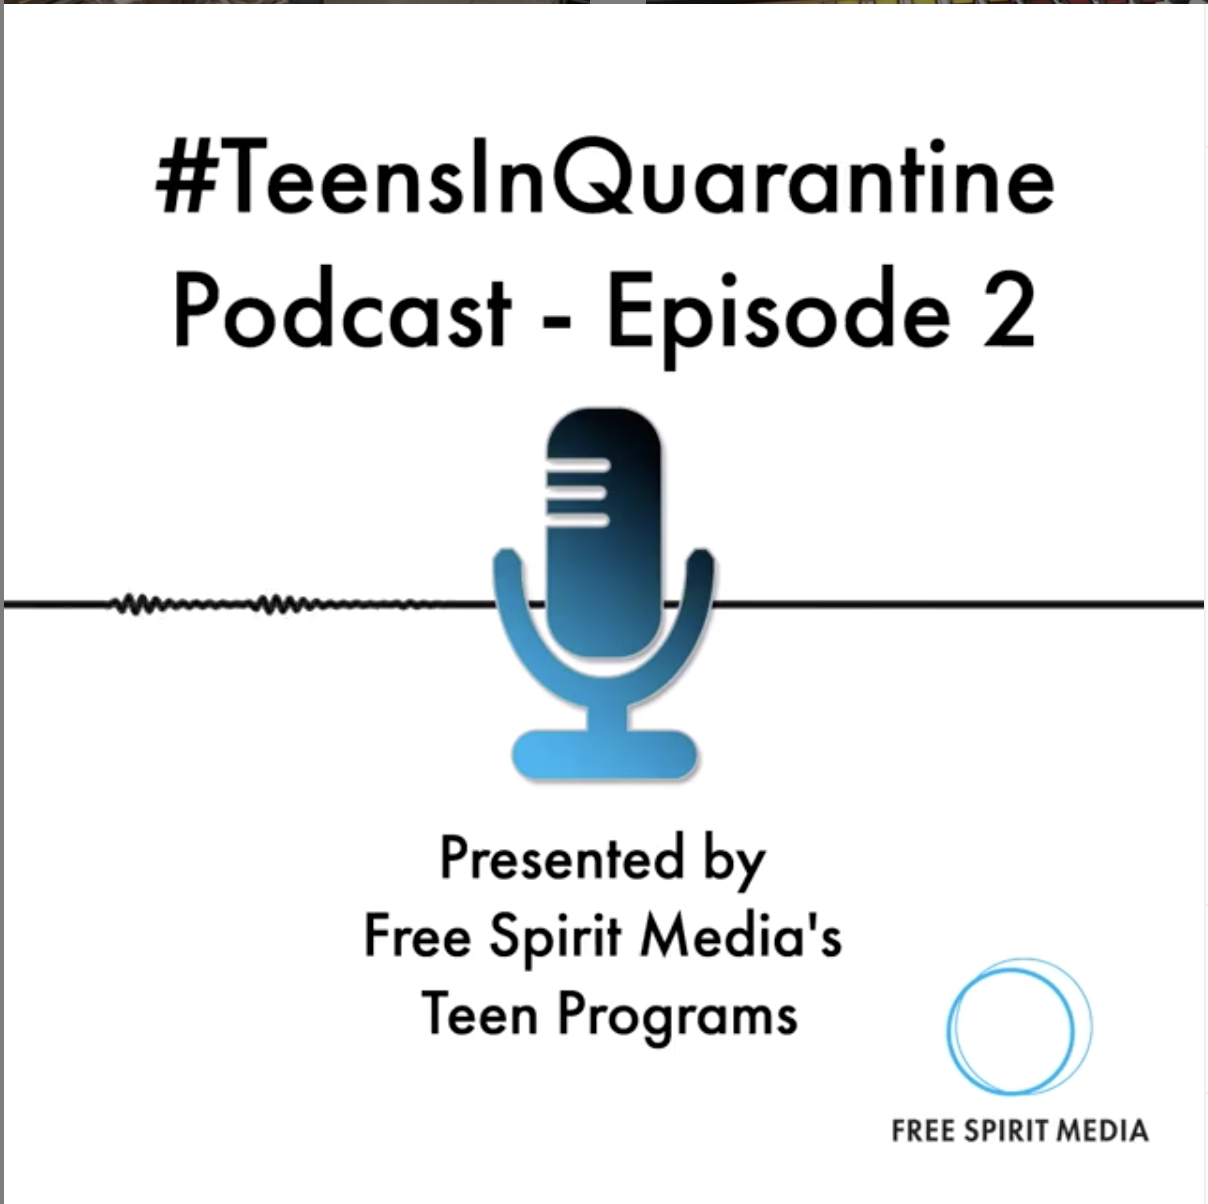 #TeensinQuarantine Podcast Episode 2